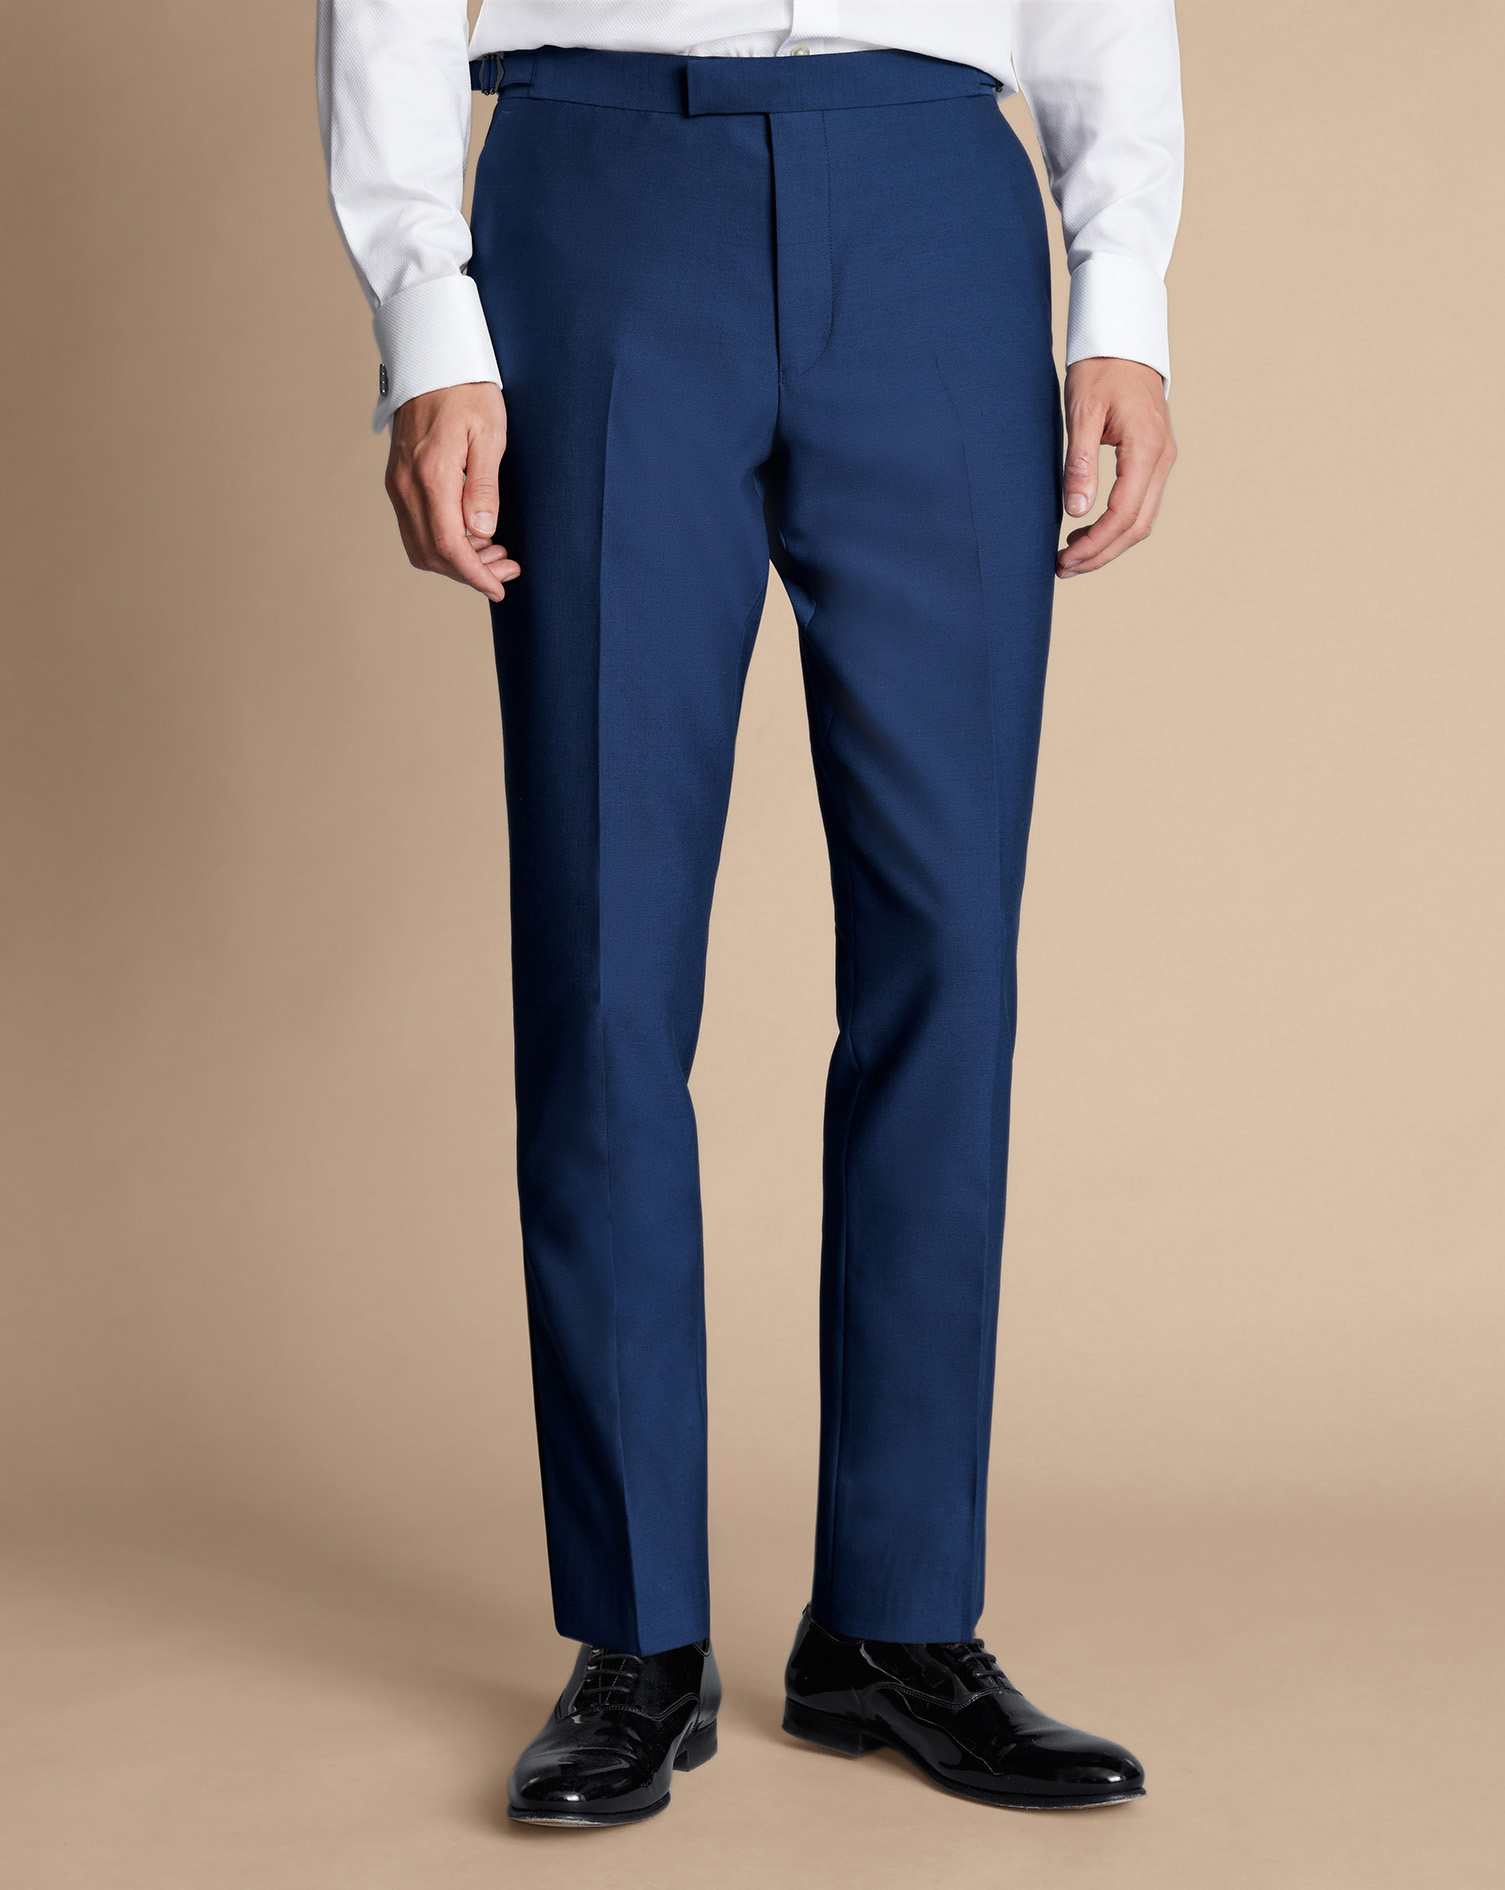 Men's Charles Tyrwhitt Dinner Suit Trousers - Royal Blue Size 32/32 Wool
